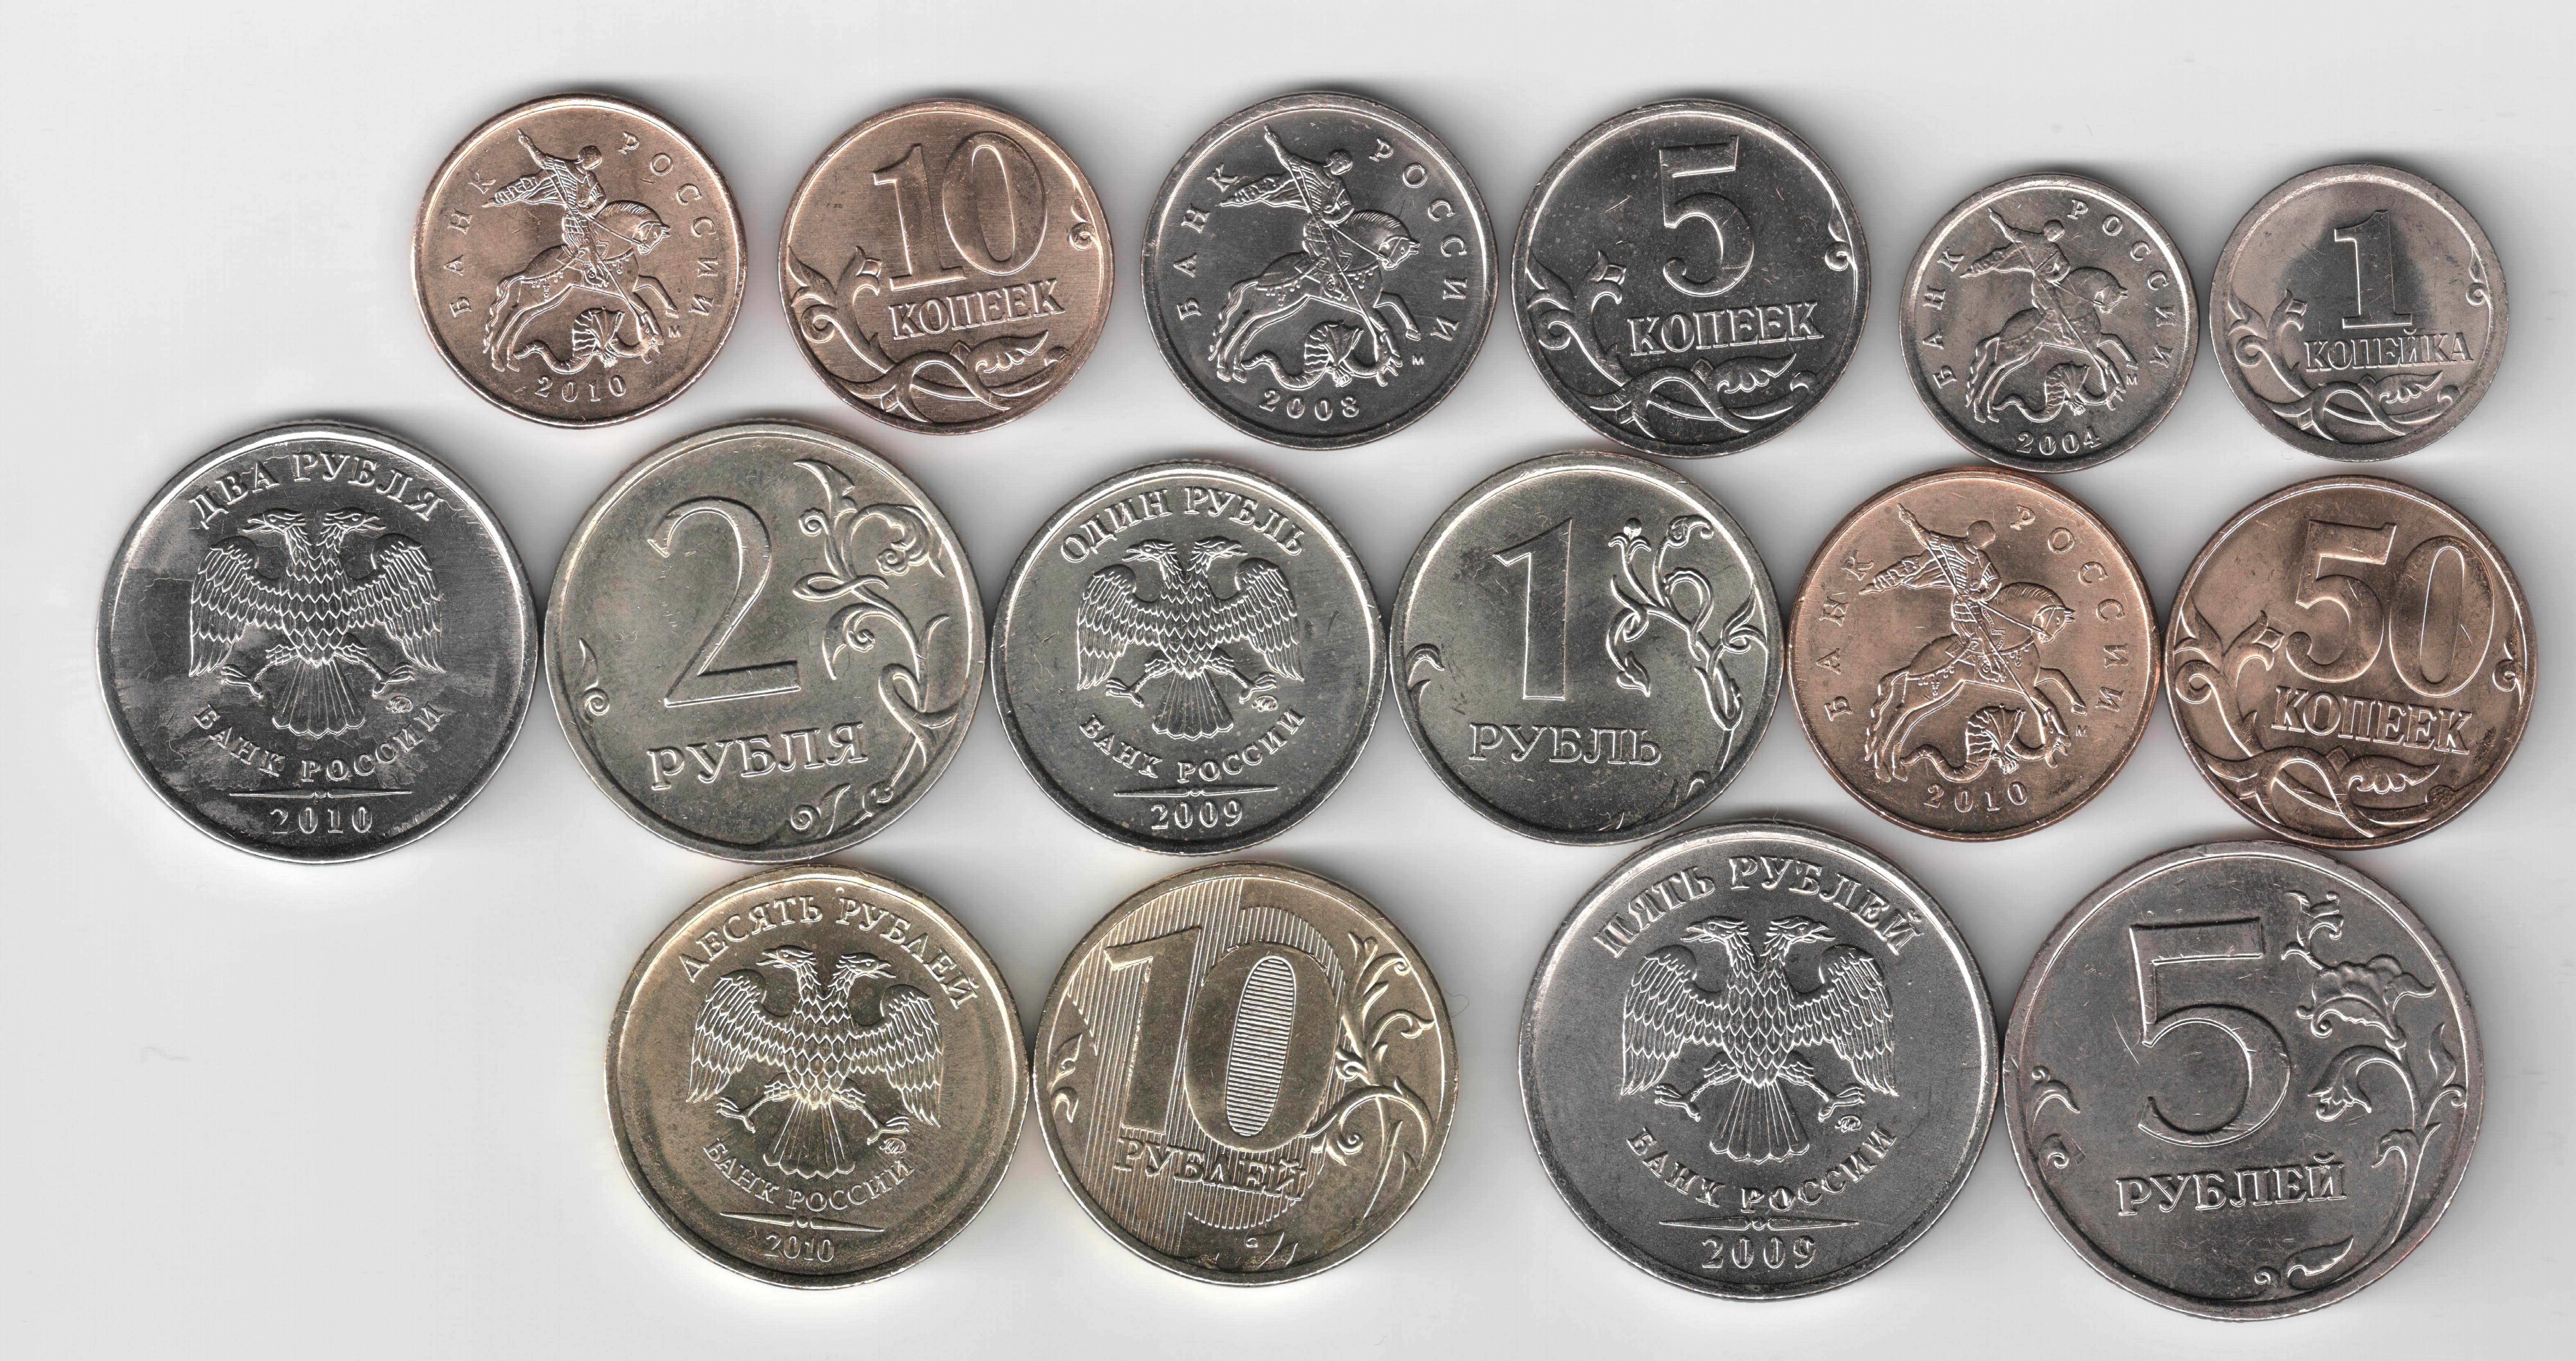 ЦБ РФ выпустил в обращение новые монеты с графическим знаком рубля